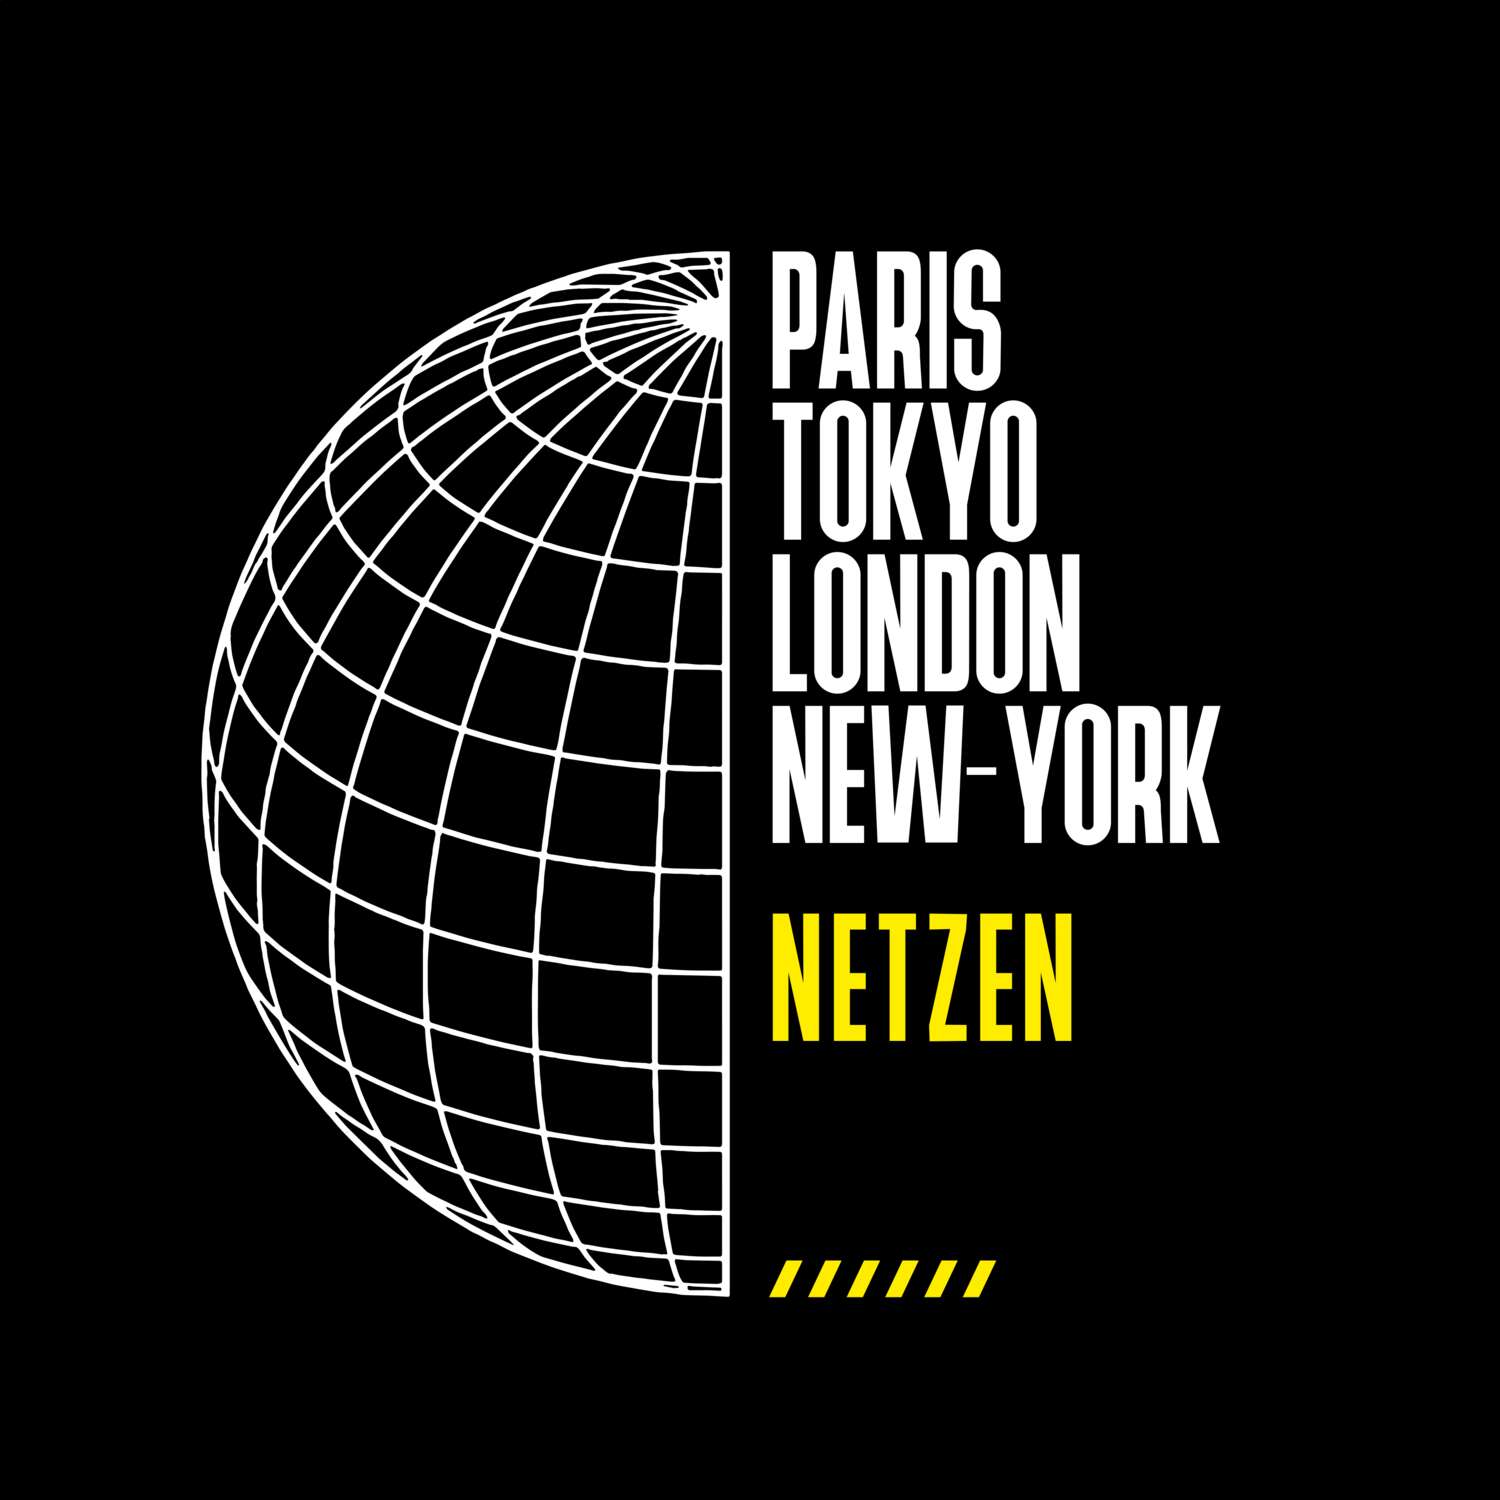 Netzen T-Shirt »Paris Tokyo London«